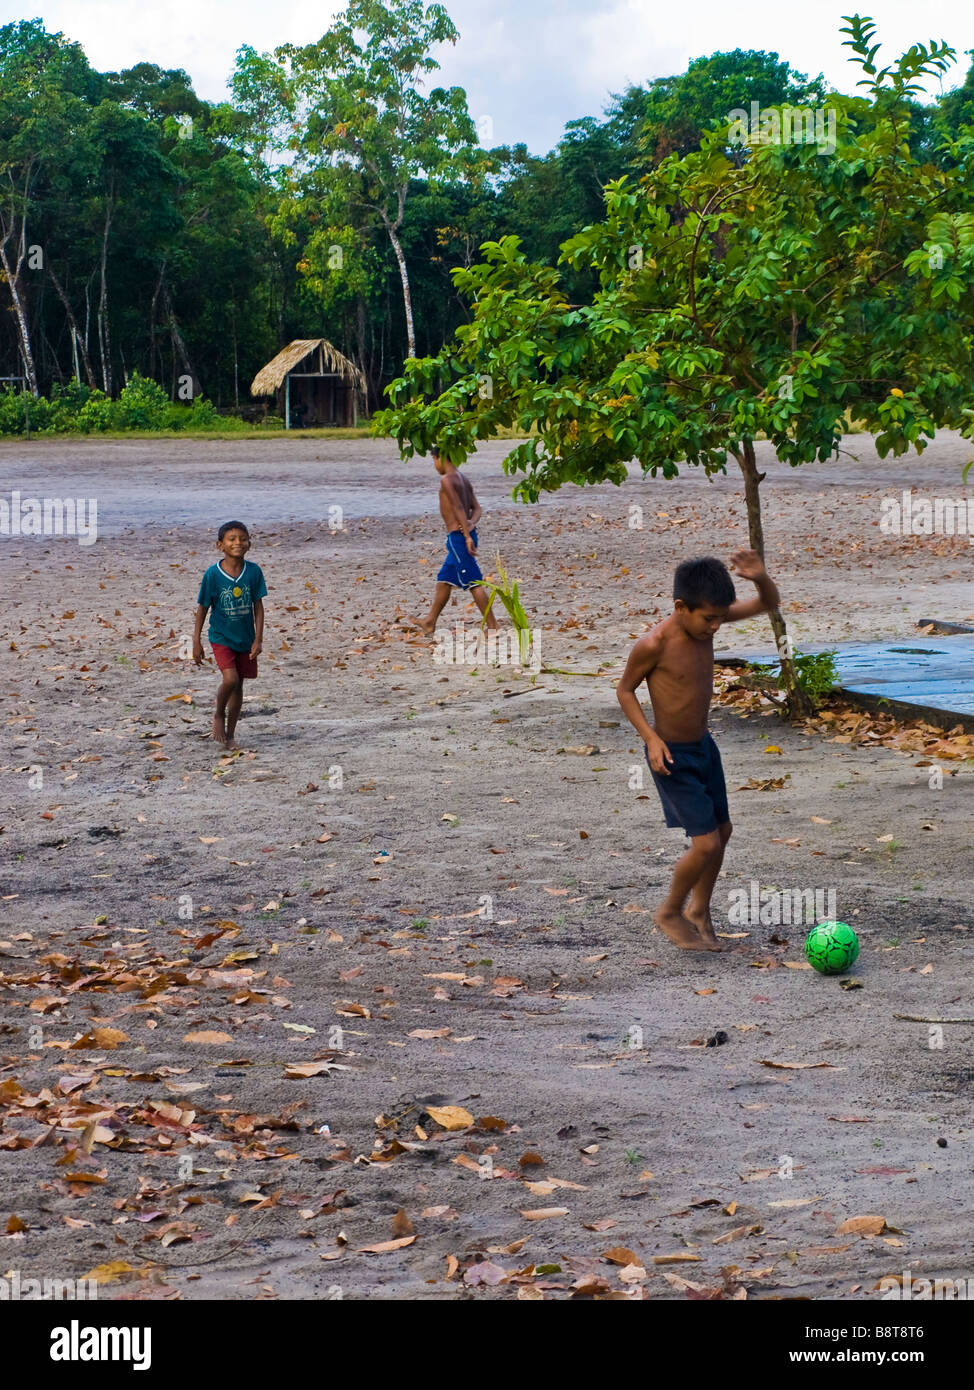 Kleine Jungs spielen Fußball in einem kleinen Dorf in der Amazon.Jamaraquá,  do Floresta Nacional Tapajos, Para, Brasilien Stockfotografie - Alamy